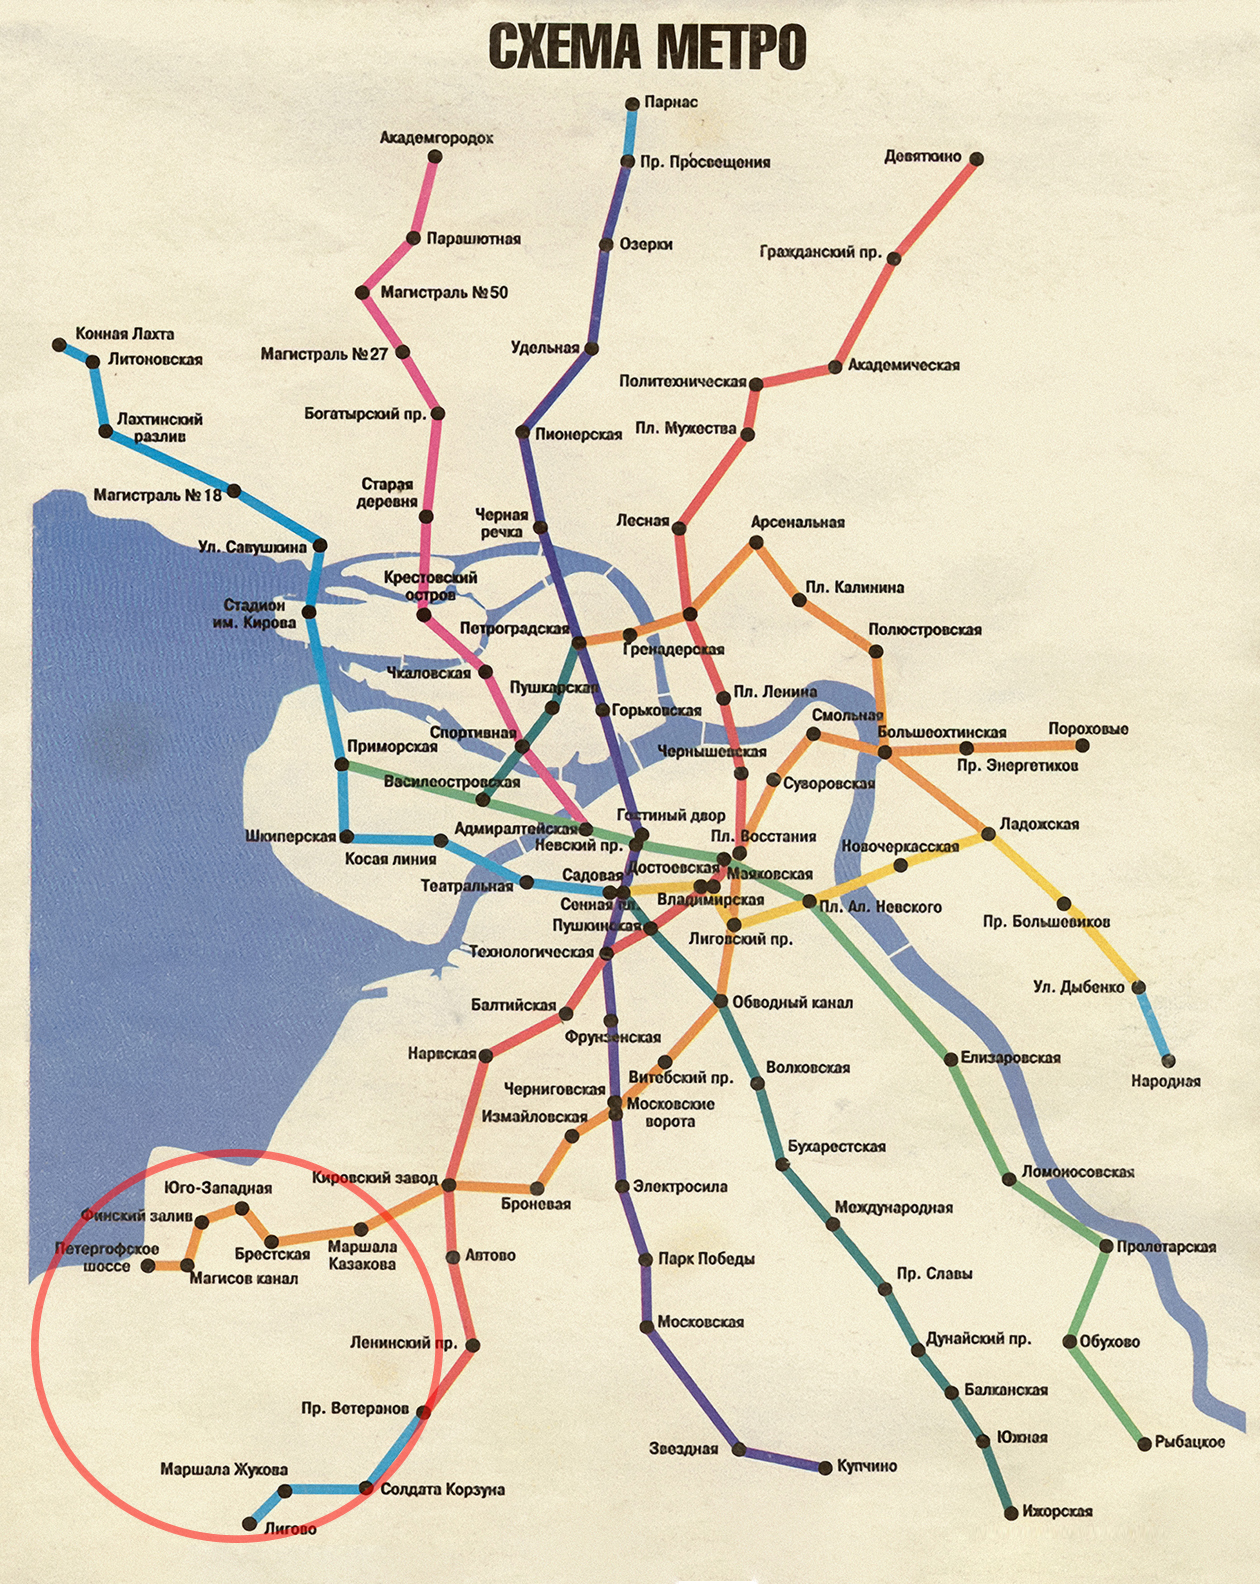 Перспективная схема метро 1997 года. Источник: Алексей Степанов / podzemka.spb.ru